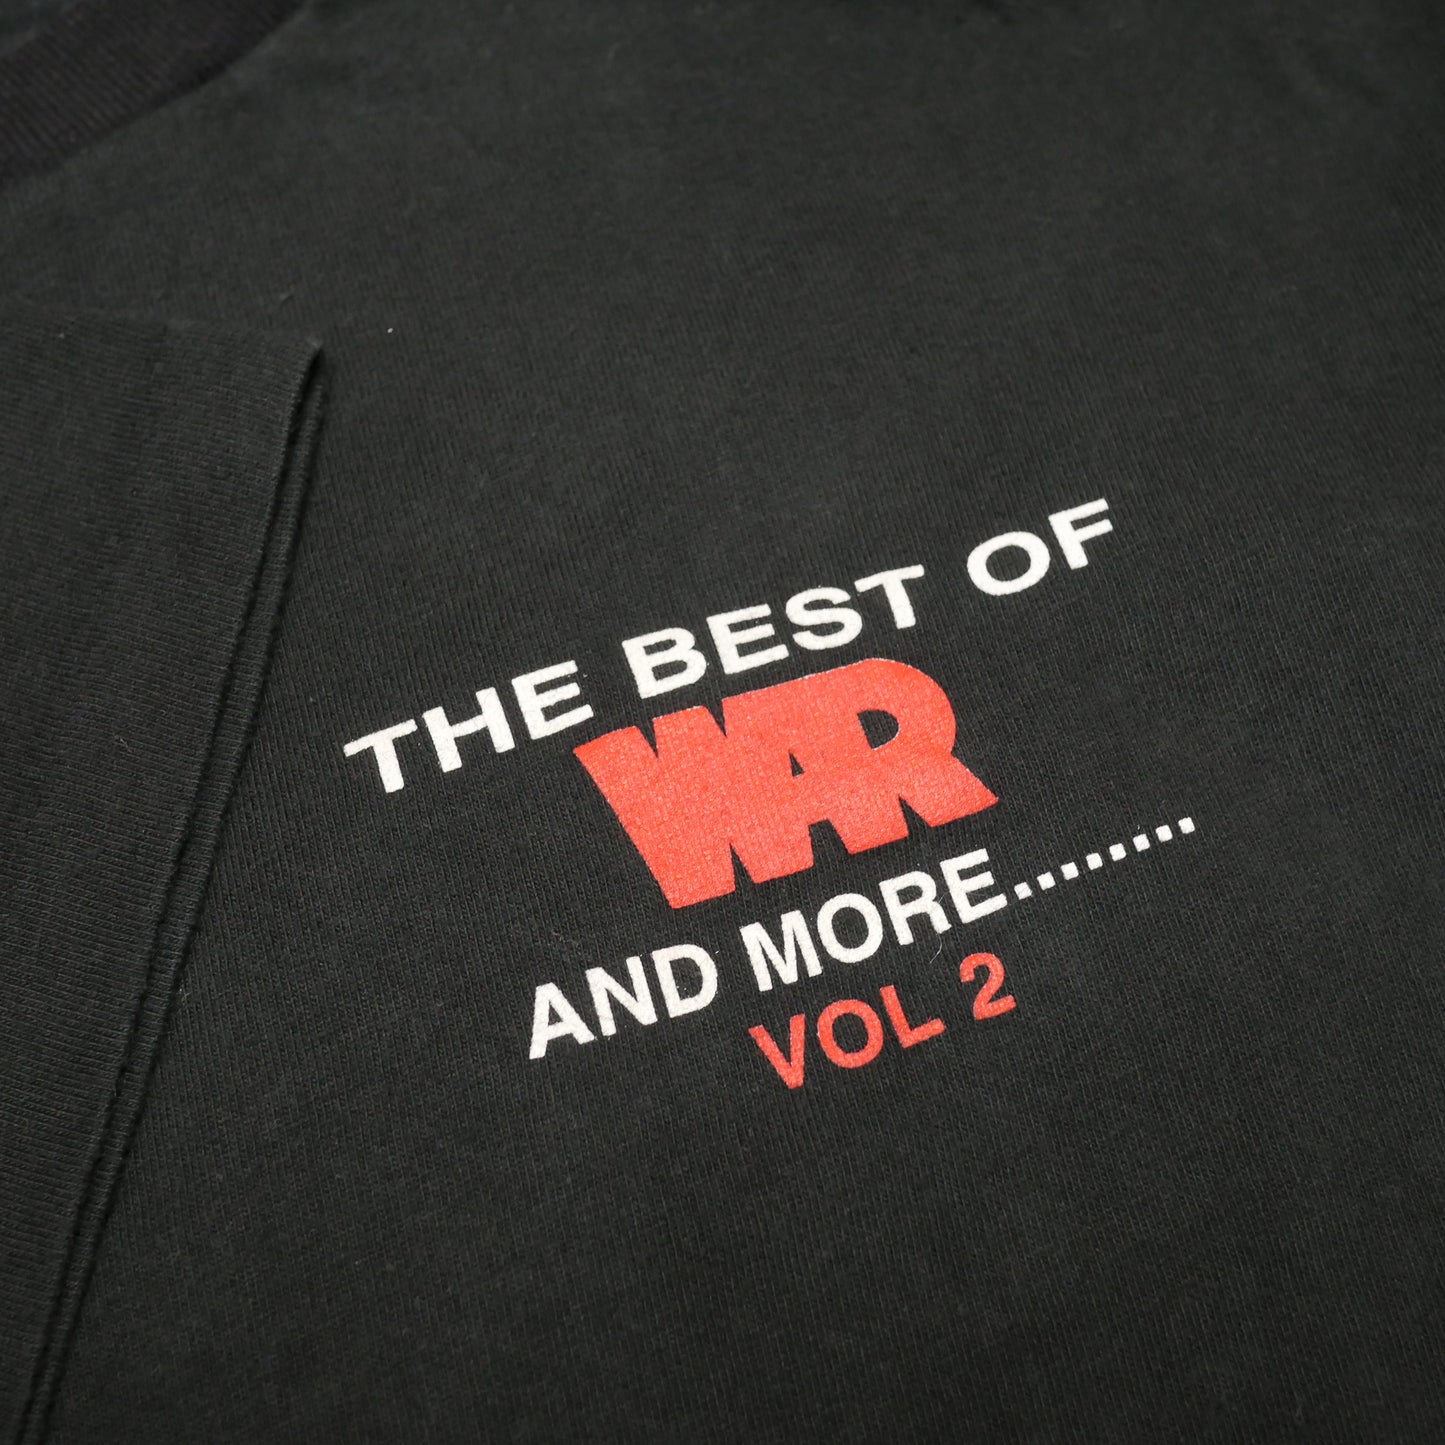 The Best Of War Vol 2 Shirt - Medium